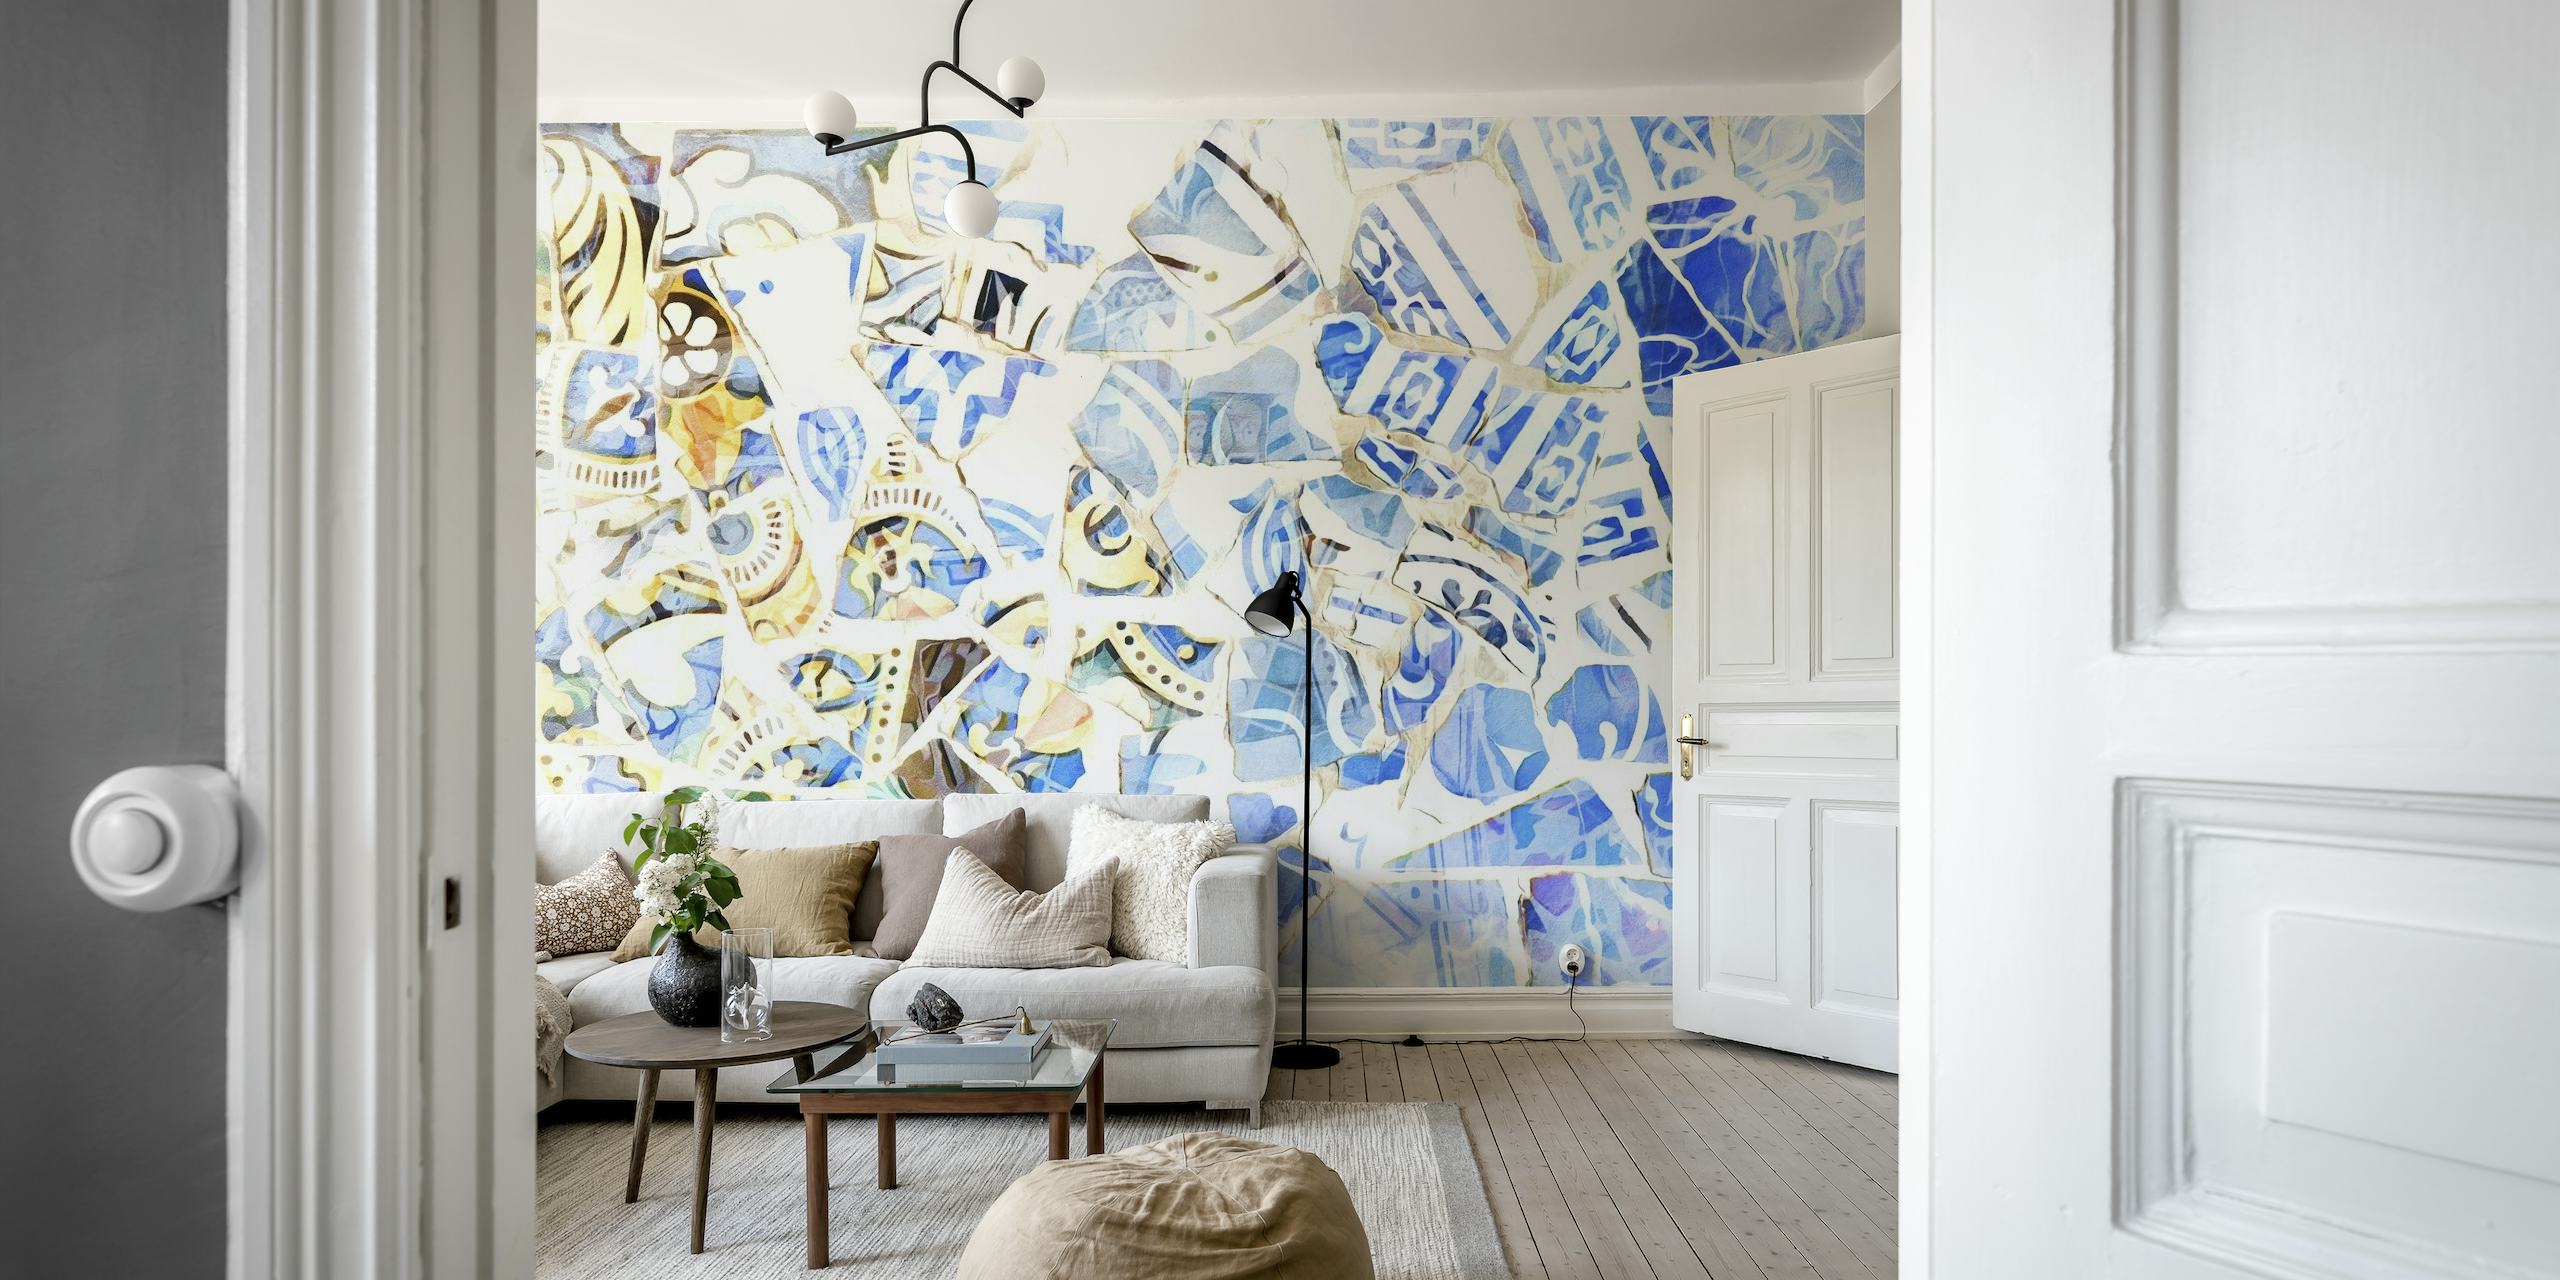 Abstrakcyjna fototapeta z mozaiką w odcieniach błękitu i bieli, inspirowana sztuką Barcelony